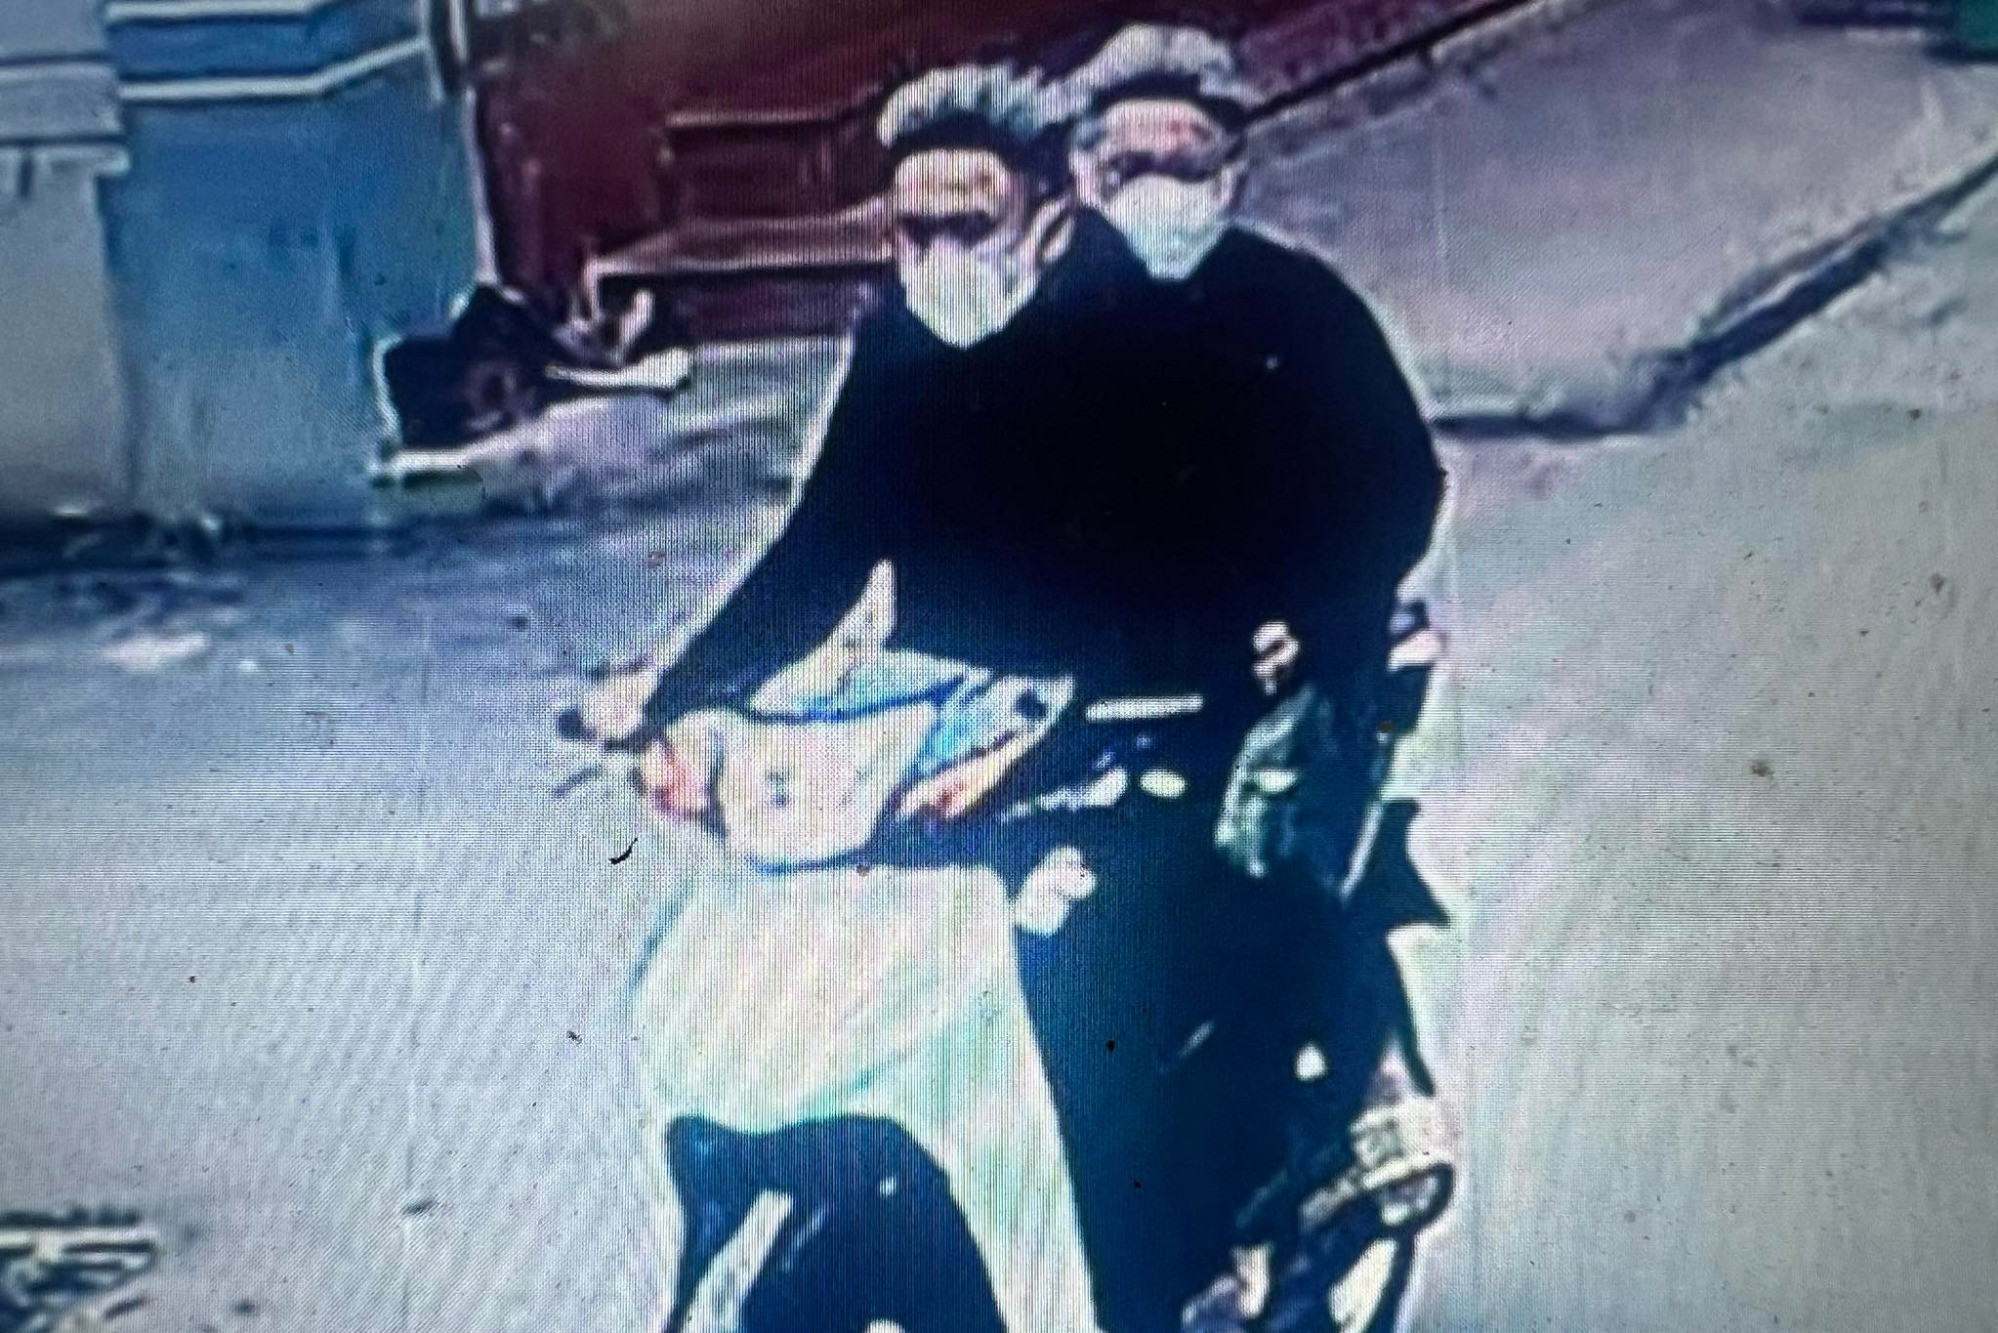 Công bố hình ảnh, truy tìm 2 thanh niên dí dao cướp tài sản ở Hà Nội